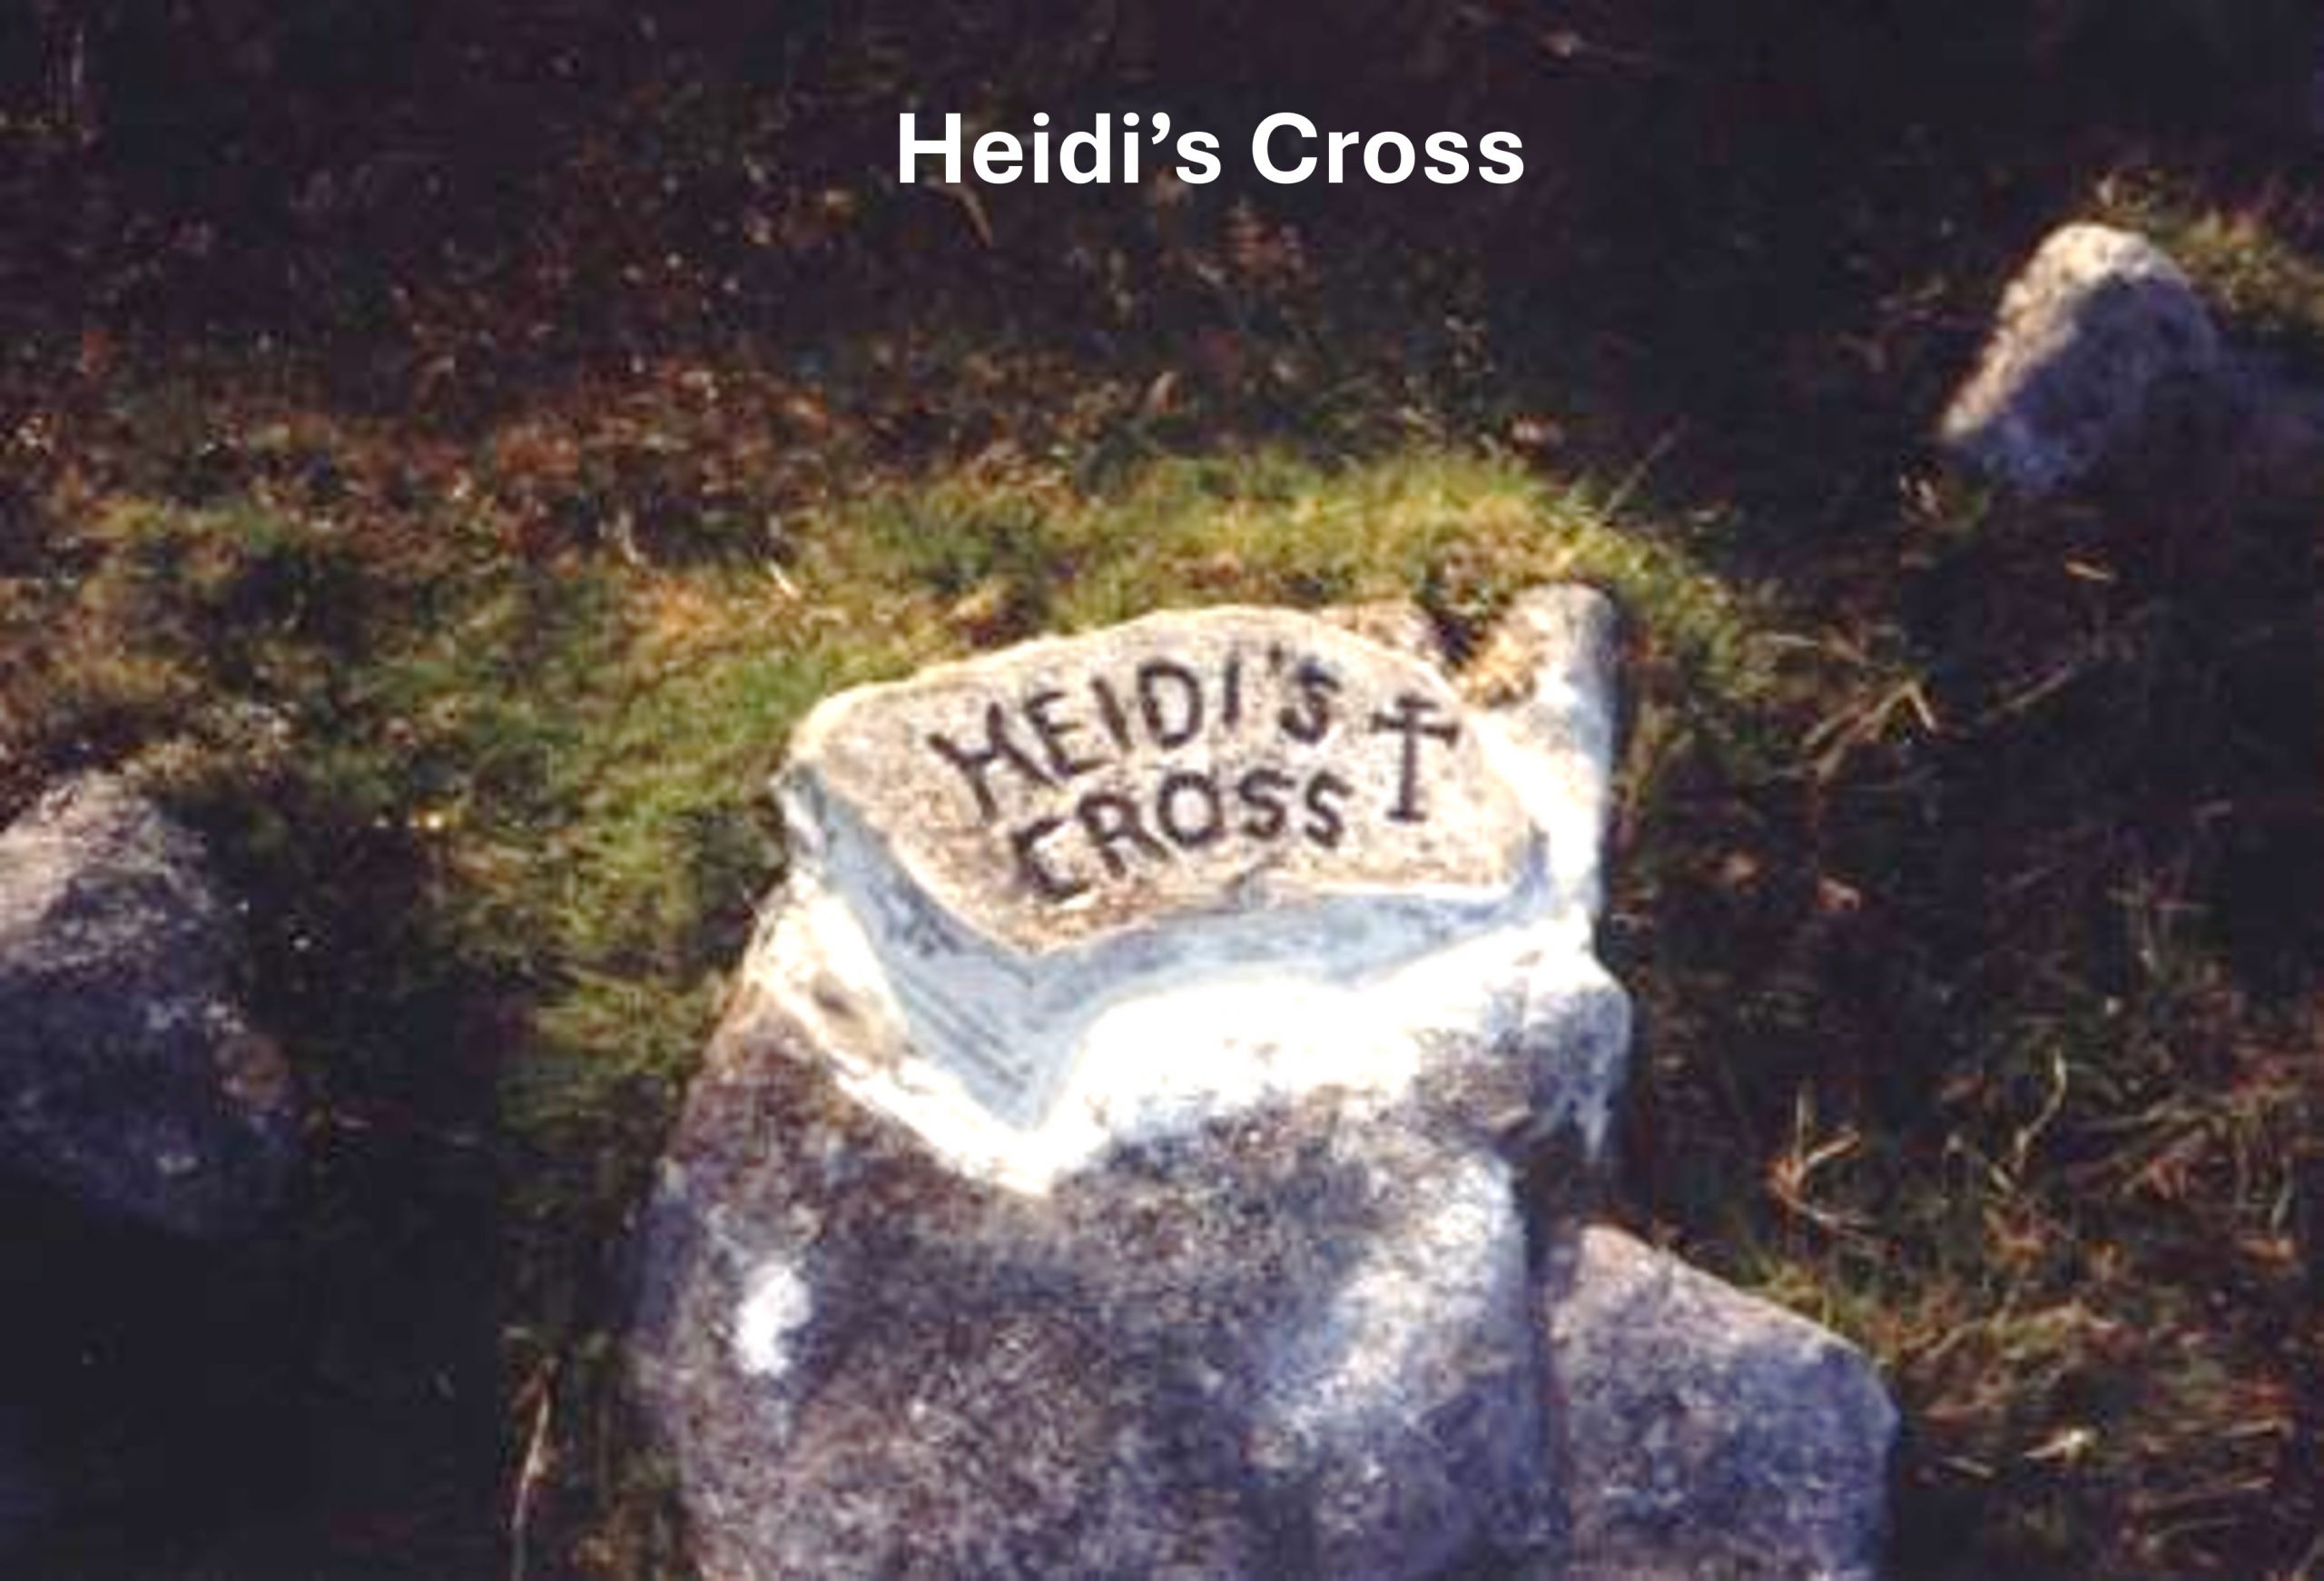 16. Heidis Cross